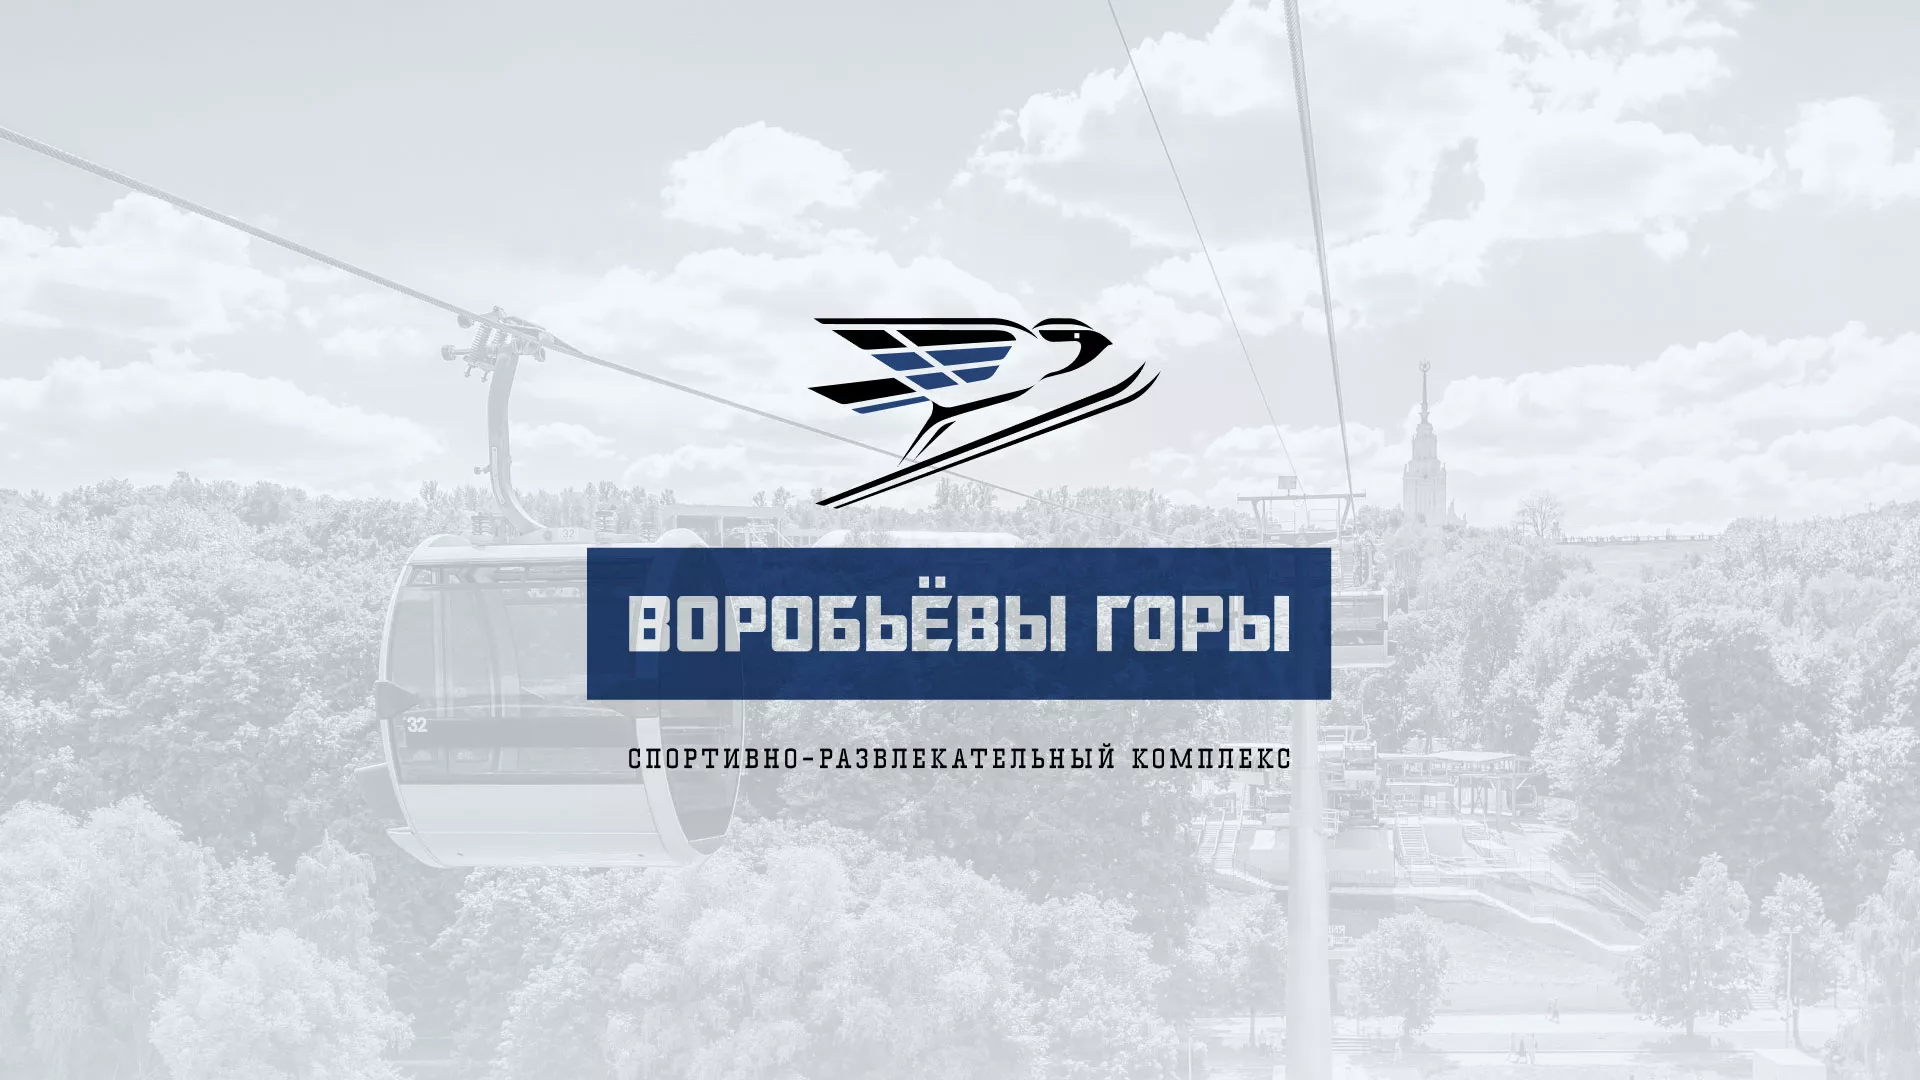 Разработка сайта в Сухиничах для спортивно-развлекательного комплекса «Воробьёвы горы»